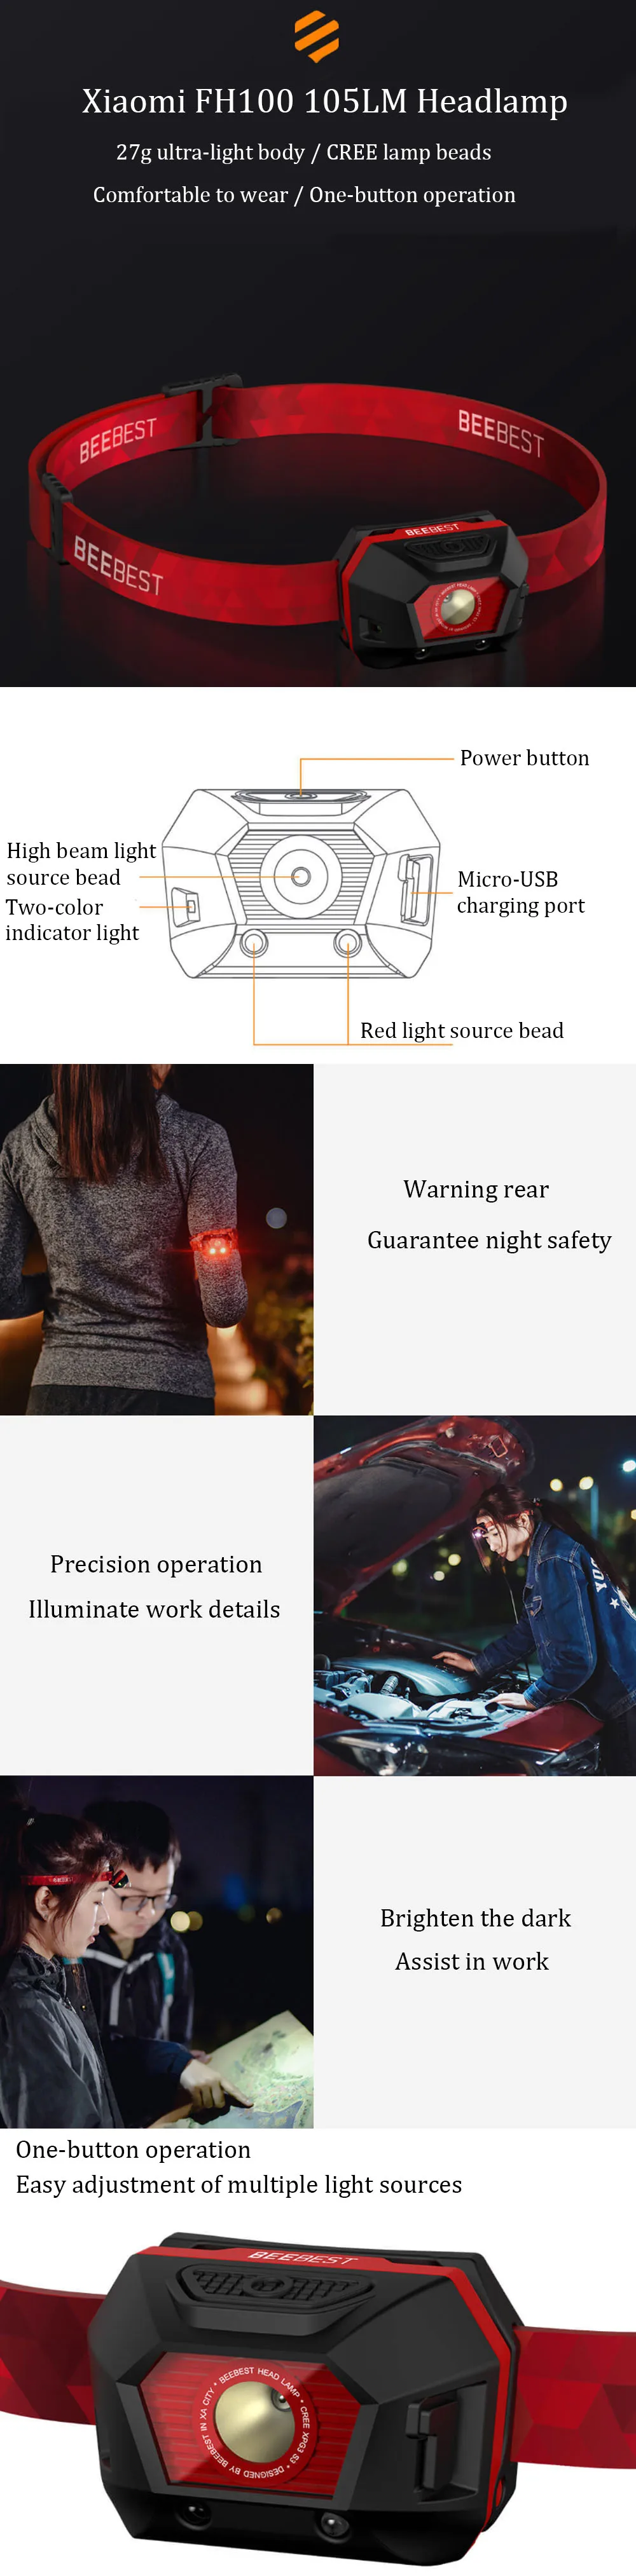 Xiaomi mijia Beebest FH100 портативный открытый светодиодный фонарь от xiaomi Youpin xiaomi умный дом водонепроницаемый фонарик